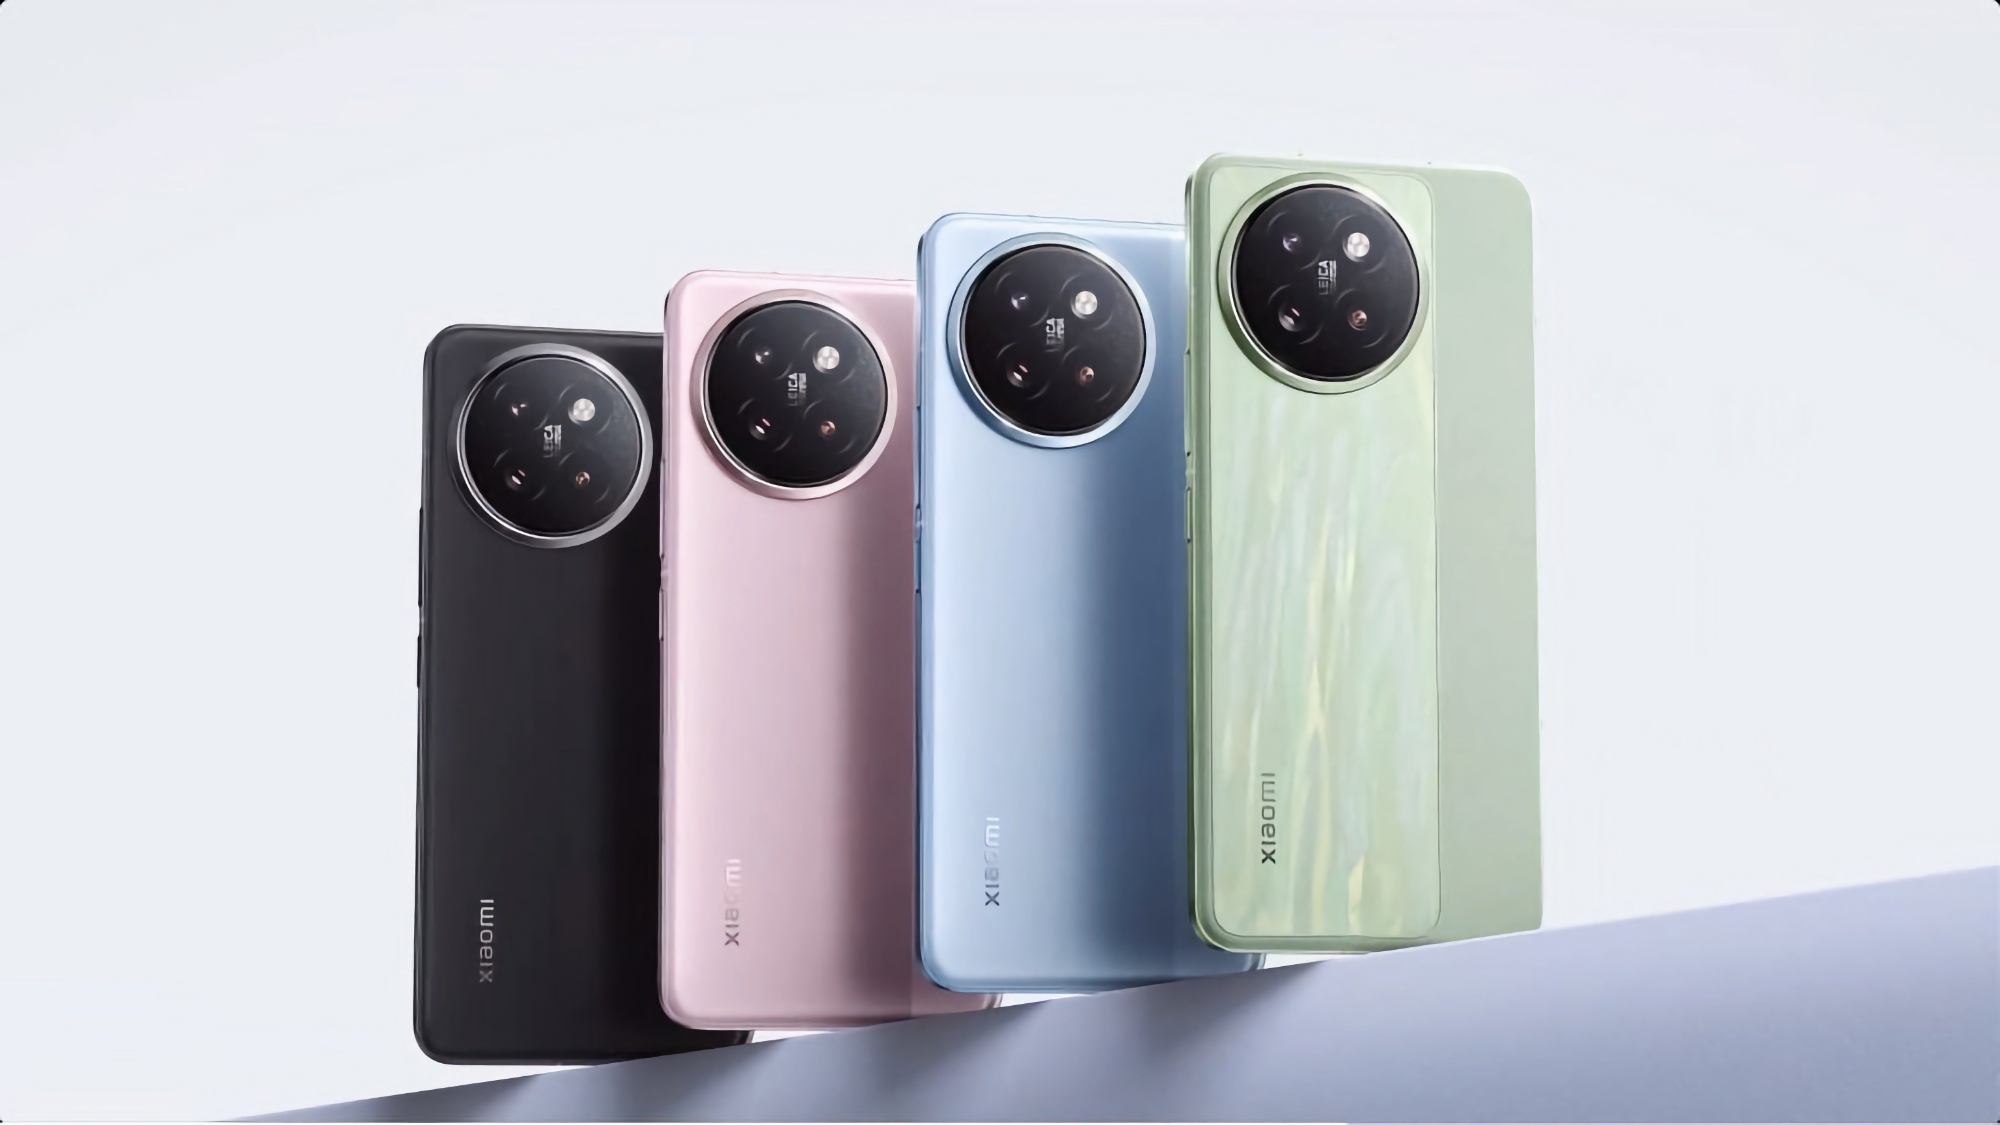 Triple appareil photo Leica et quatre couleurs : le Xiaomi CIVI 4 Pro apparaît dans une vidéo promotionnelle